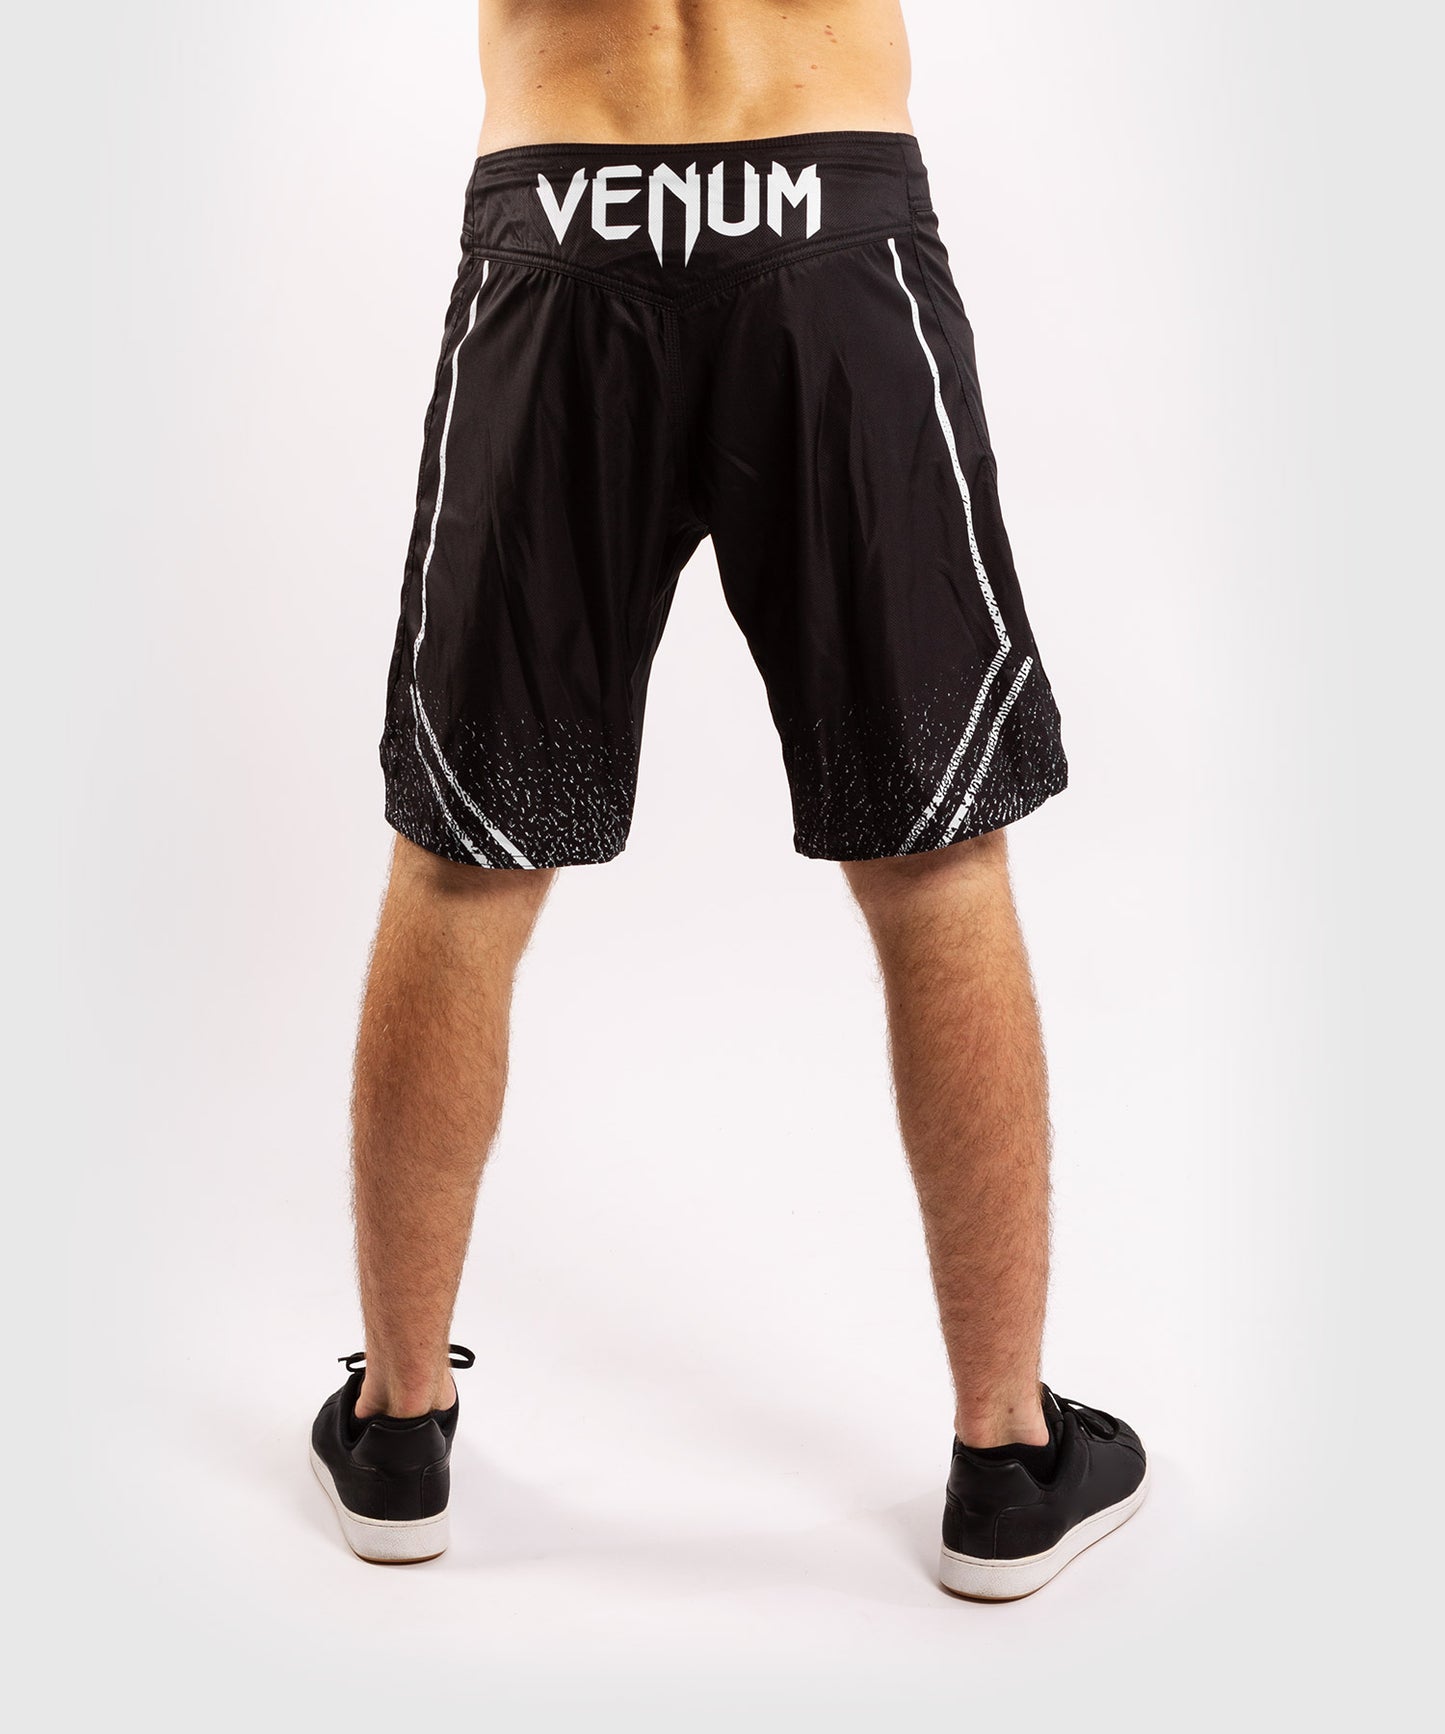 Pantalones MMA Venum Signature - Negro/Blanco